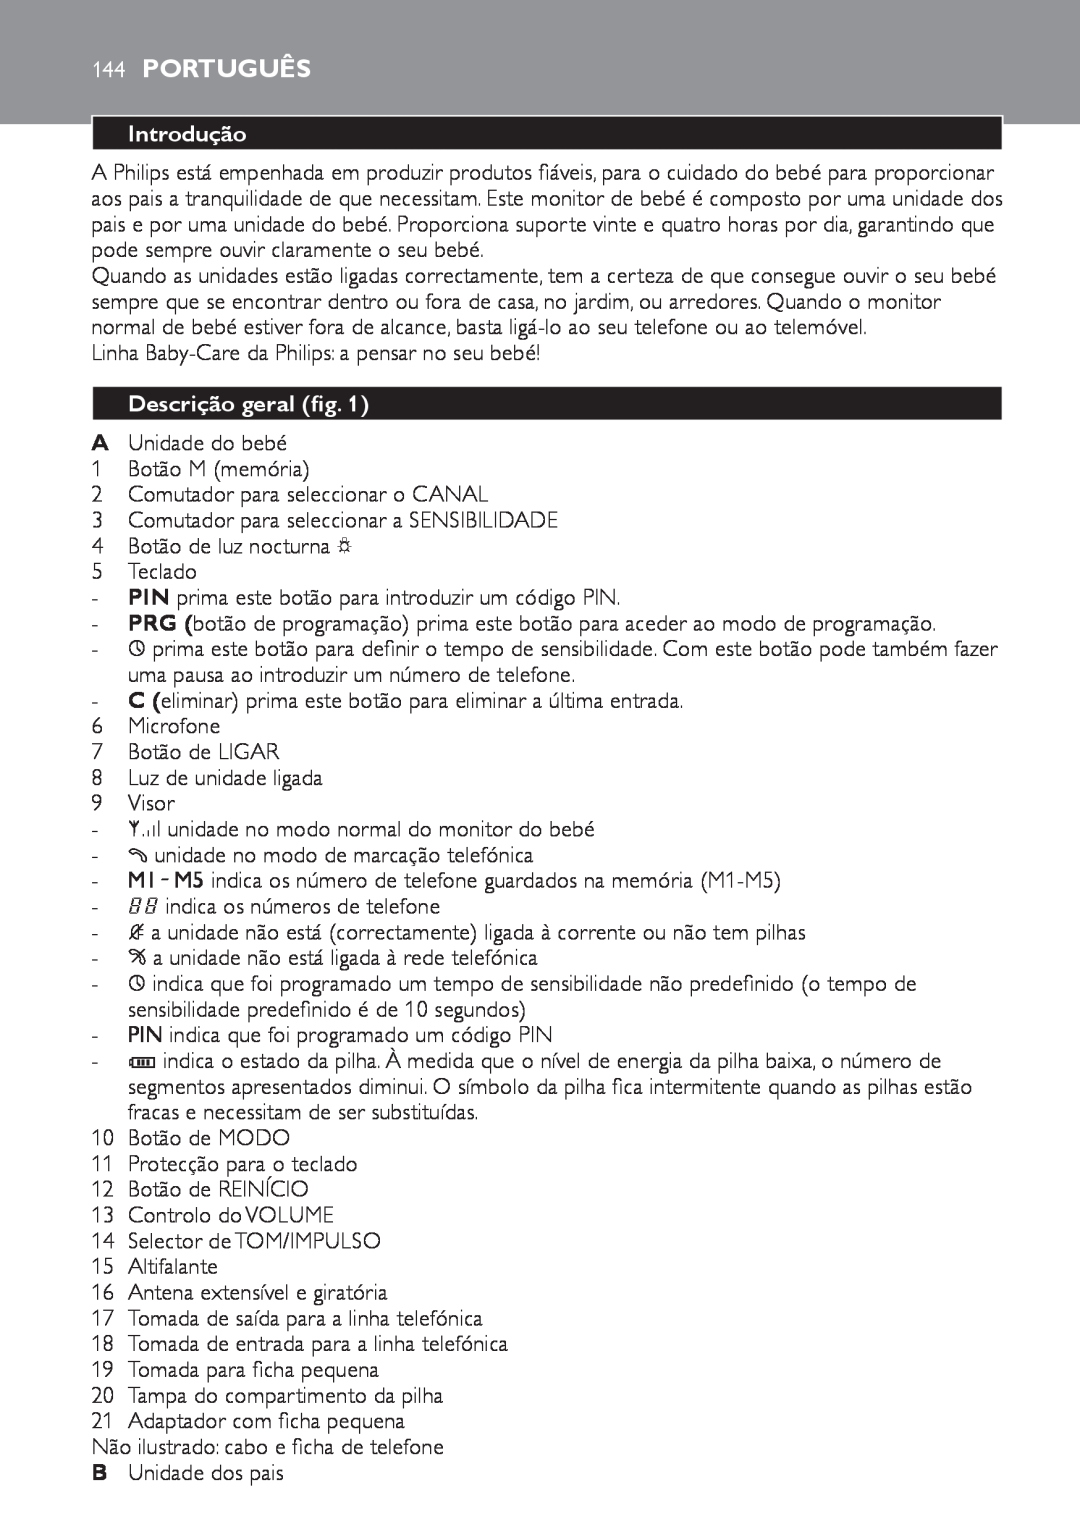 Philips SCD 469 manual 144Português, Introdução, Descrição geral fig 